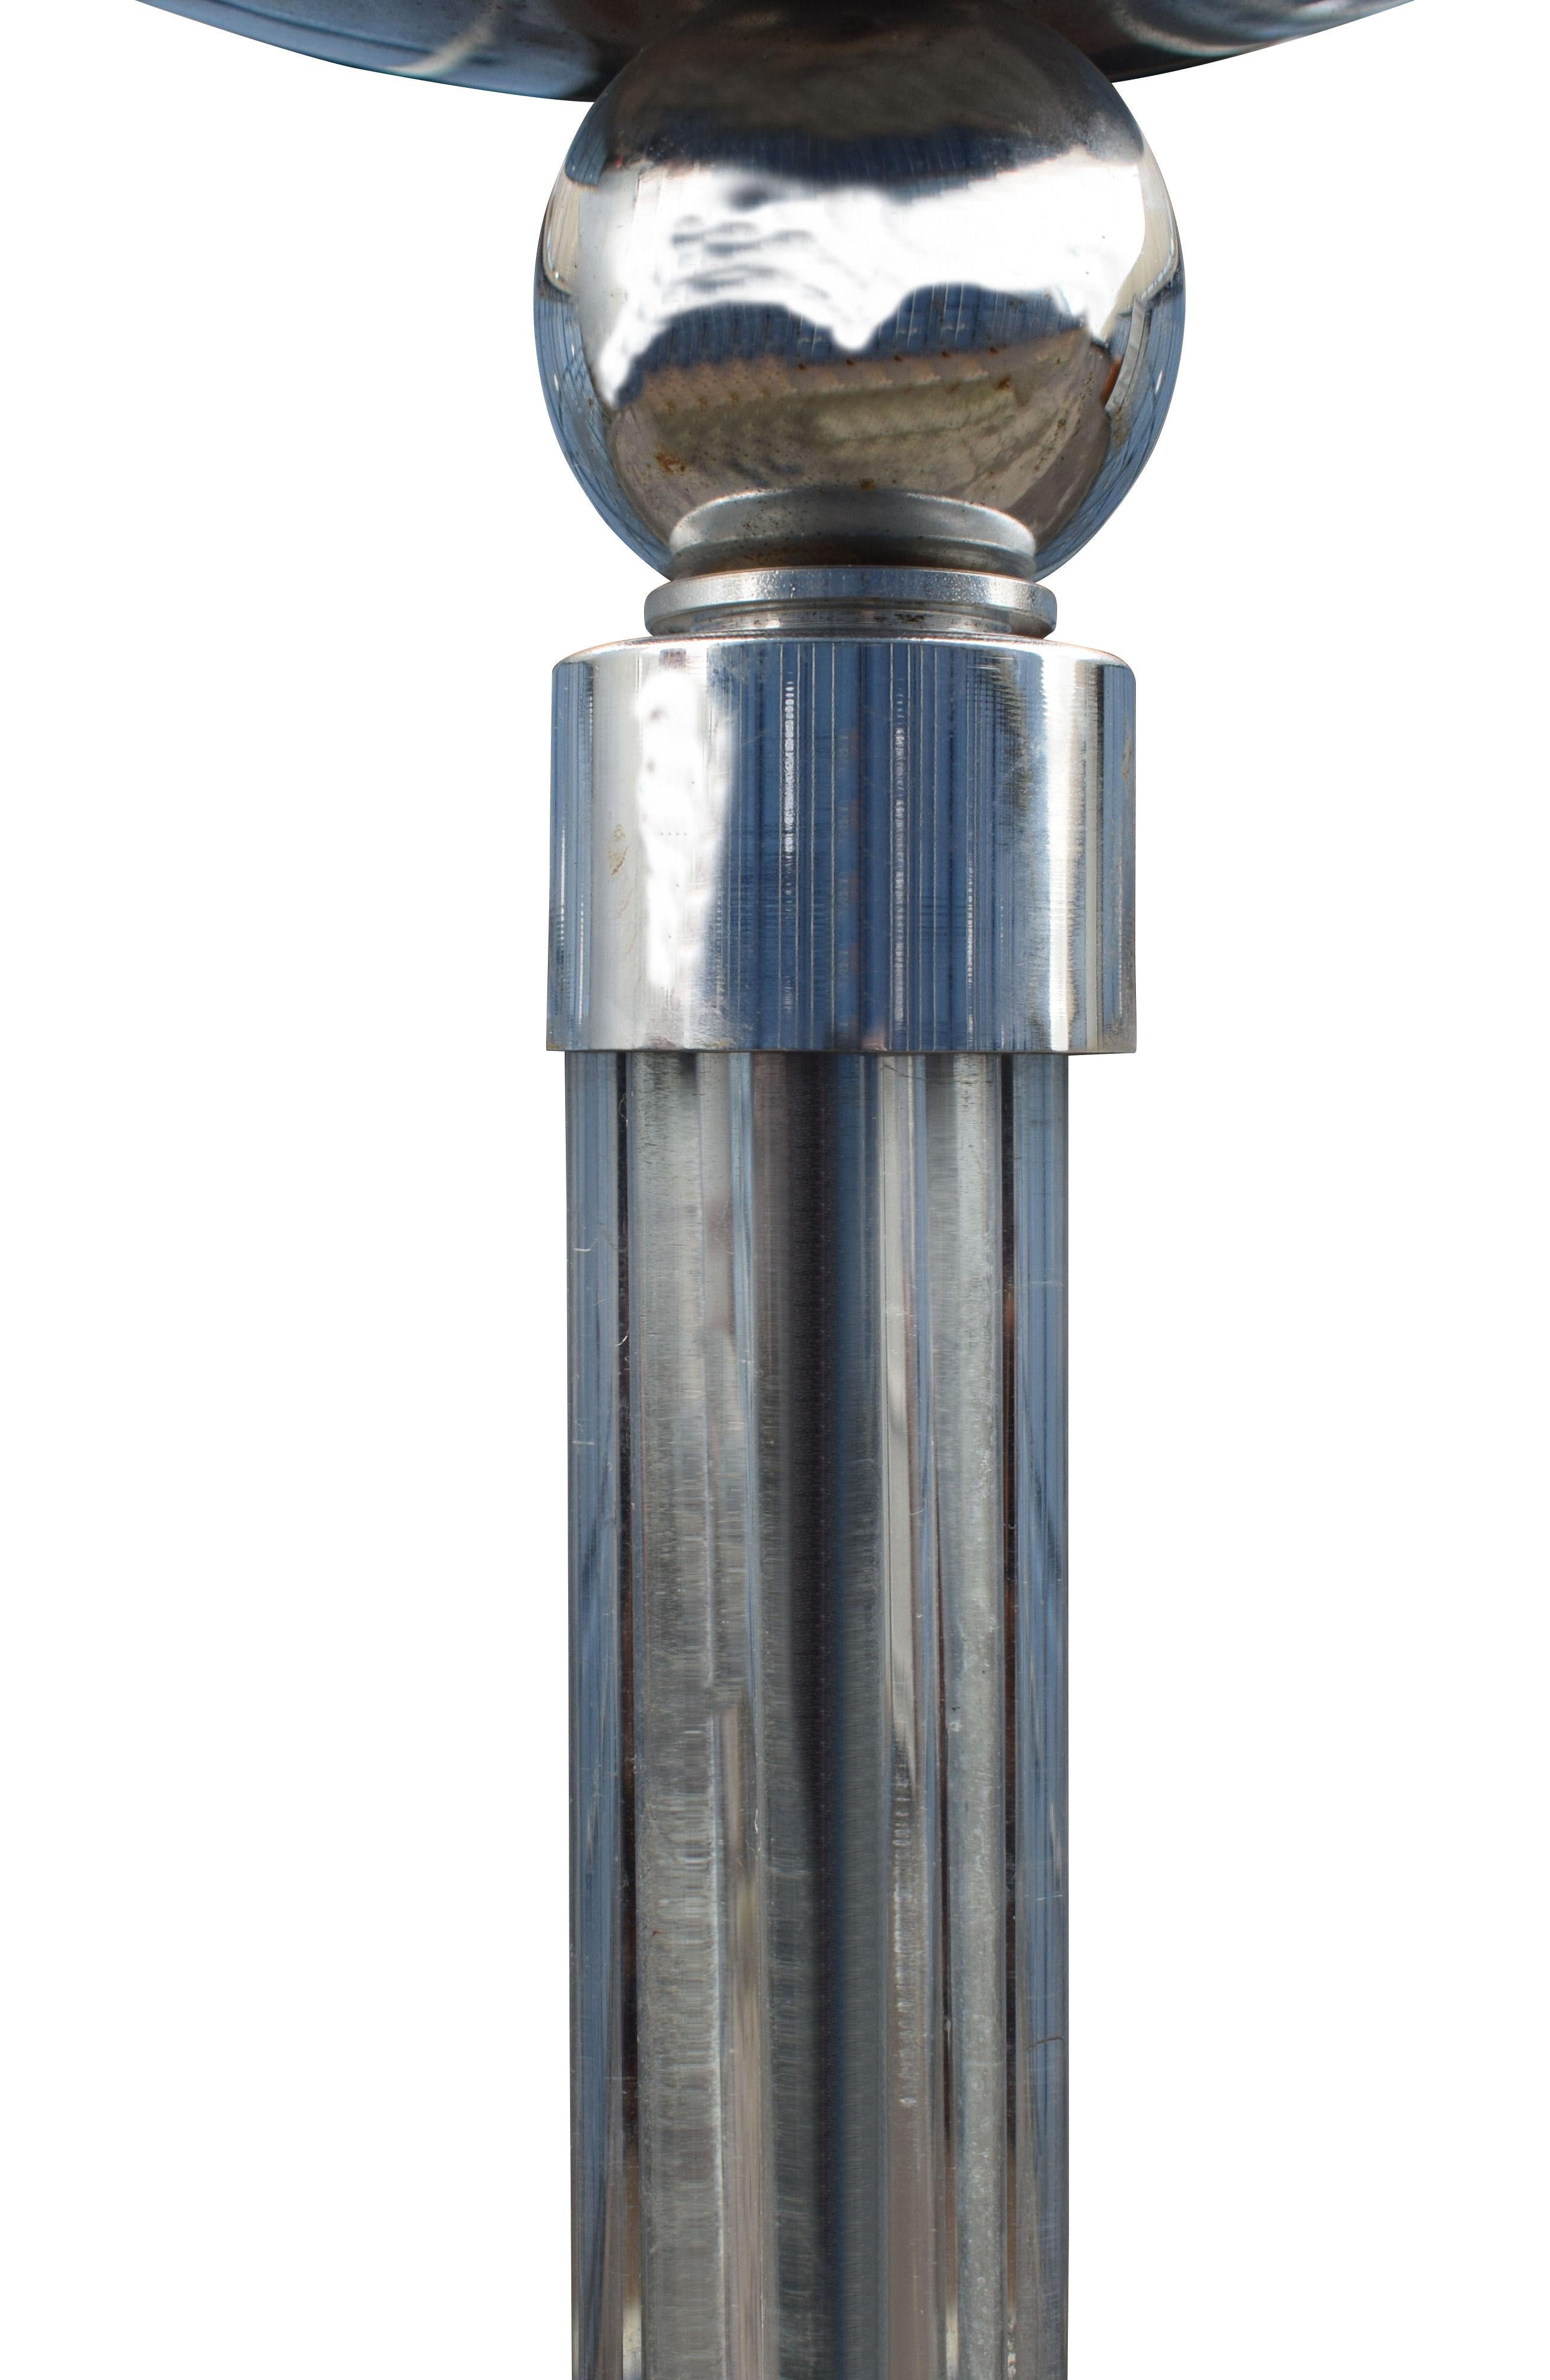 Sehr stilvolle Art-Déco-Leuchte aus den 1930er Jahren aus Chrom und Glas. Eine fabelhaft gestylte Stehlampe mit einer wokförmigen Chromhaube / Schirm mit Glasstäben, die den Stiel / die Säule bilden, mit einem runden Chromsockel, der beschwert ist.